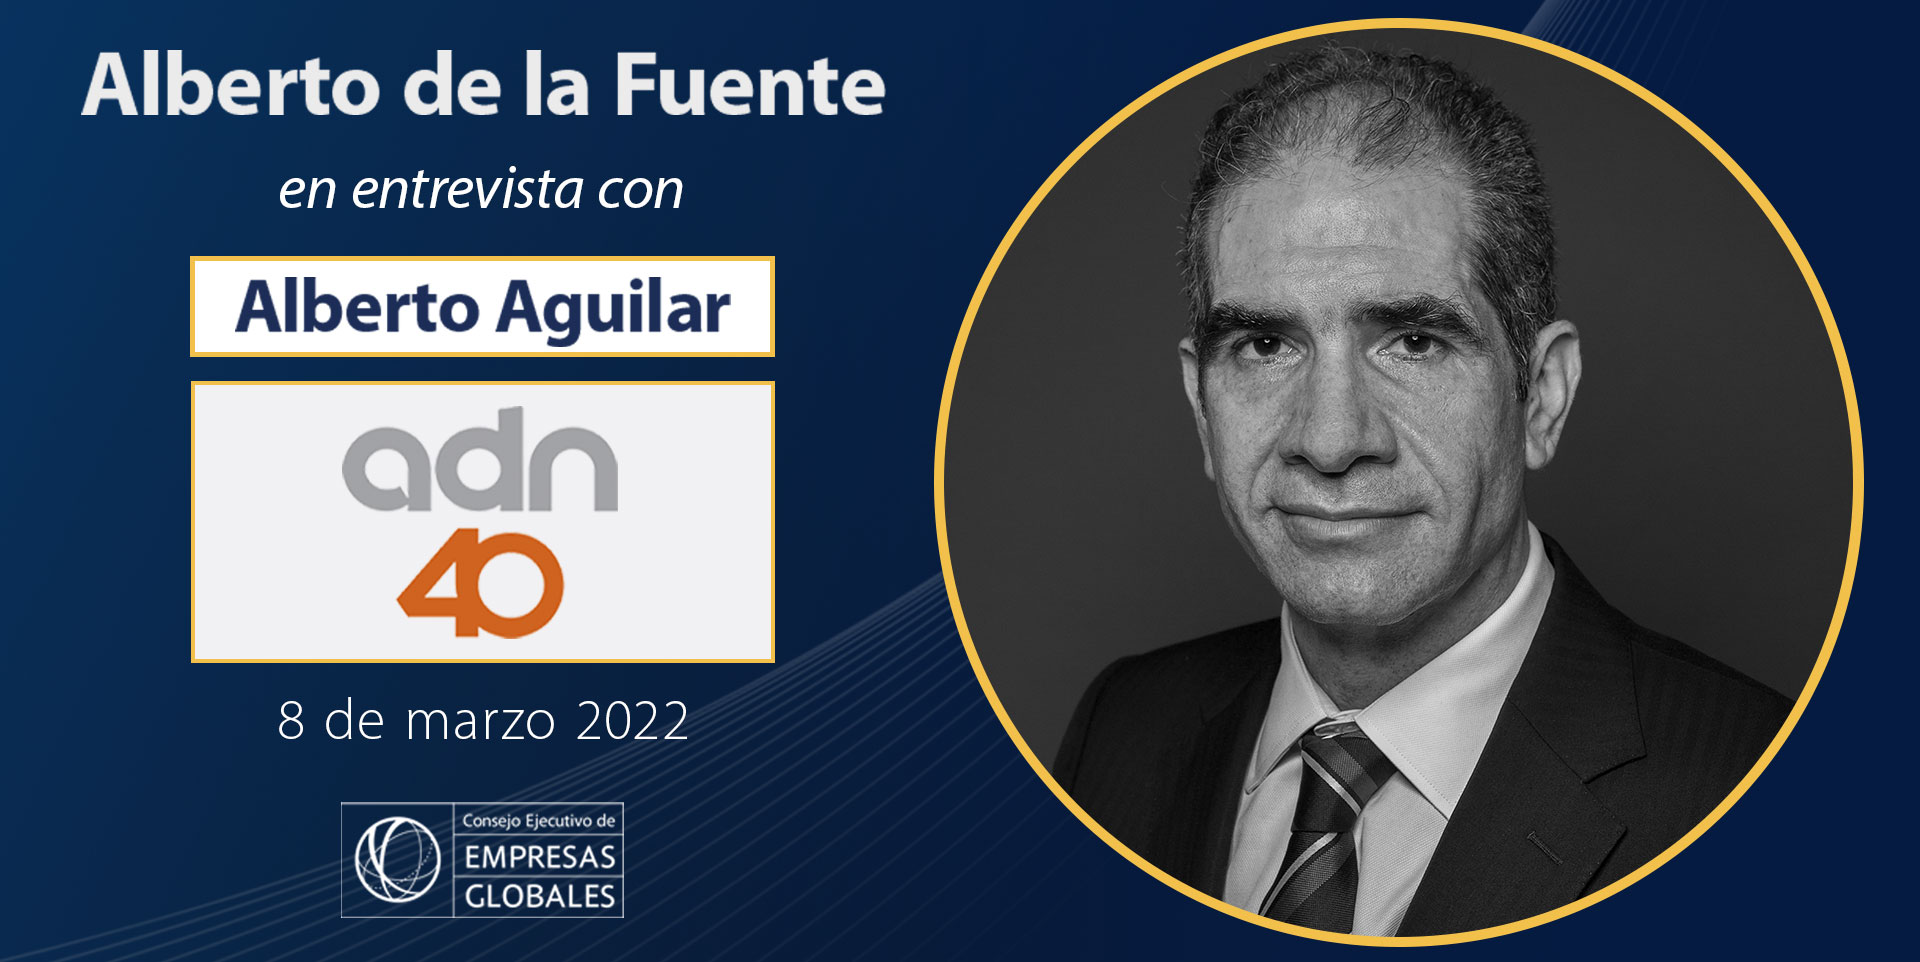 Alberto de la Fuente, Presidente del CEEG, con Alberto Aguilar, ADN 40